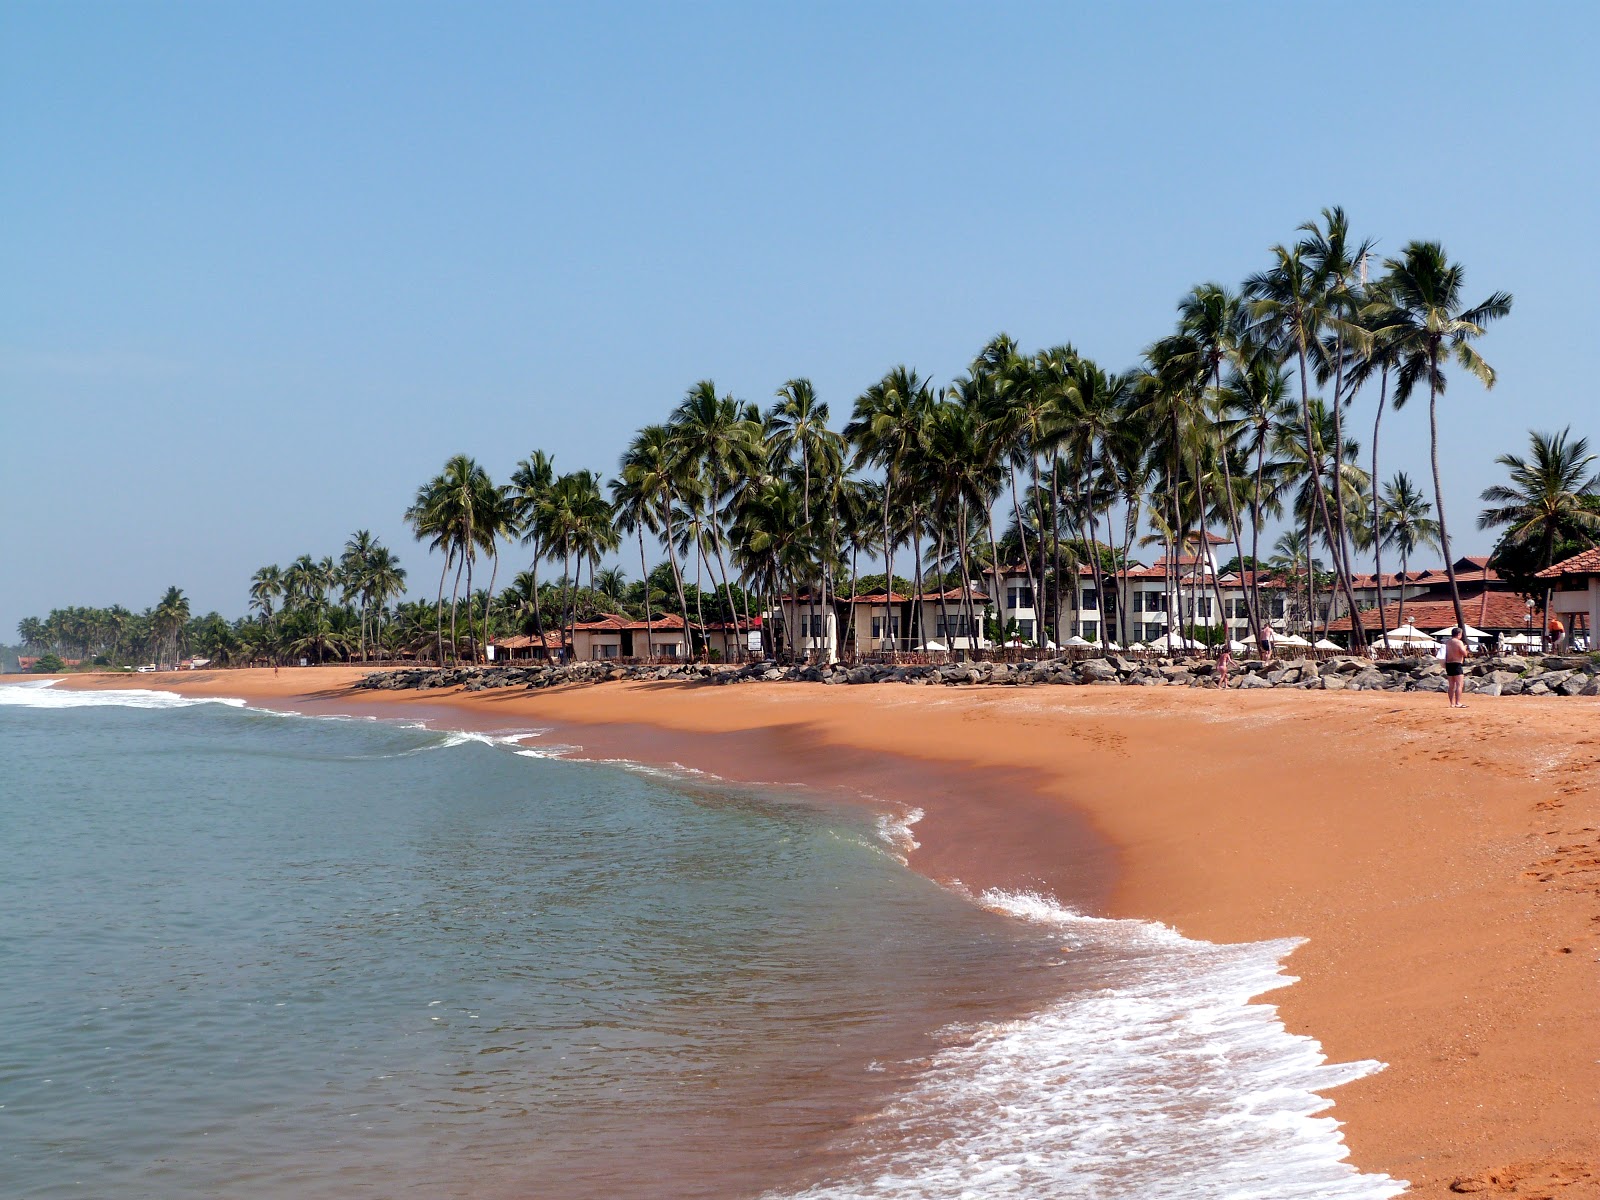 Zdjęcie Dolphin hotel beach z powierzchnią jasny piasek